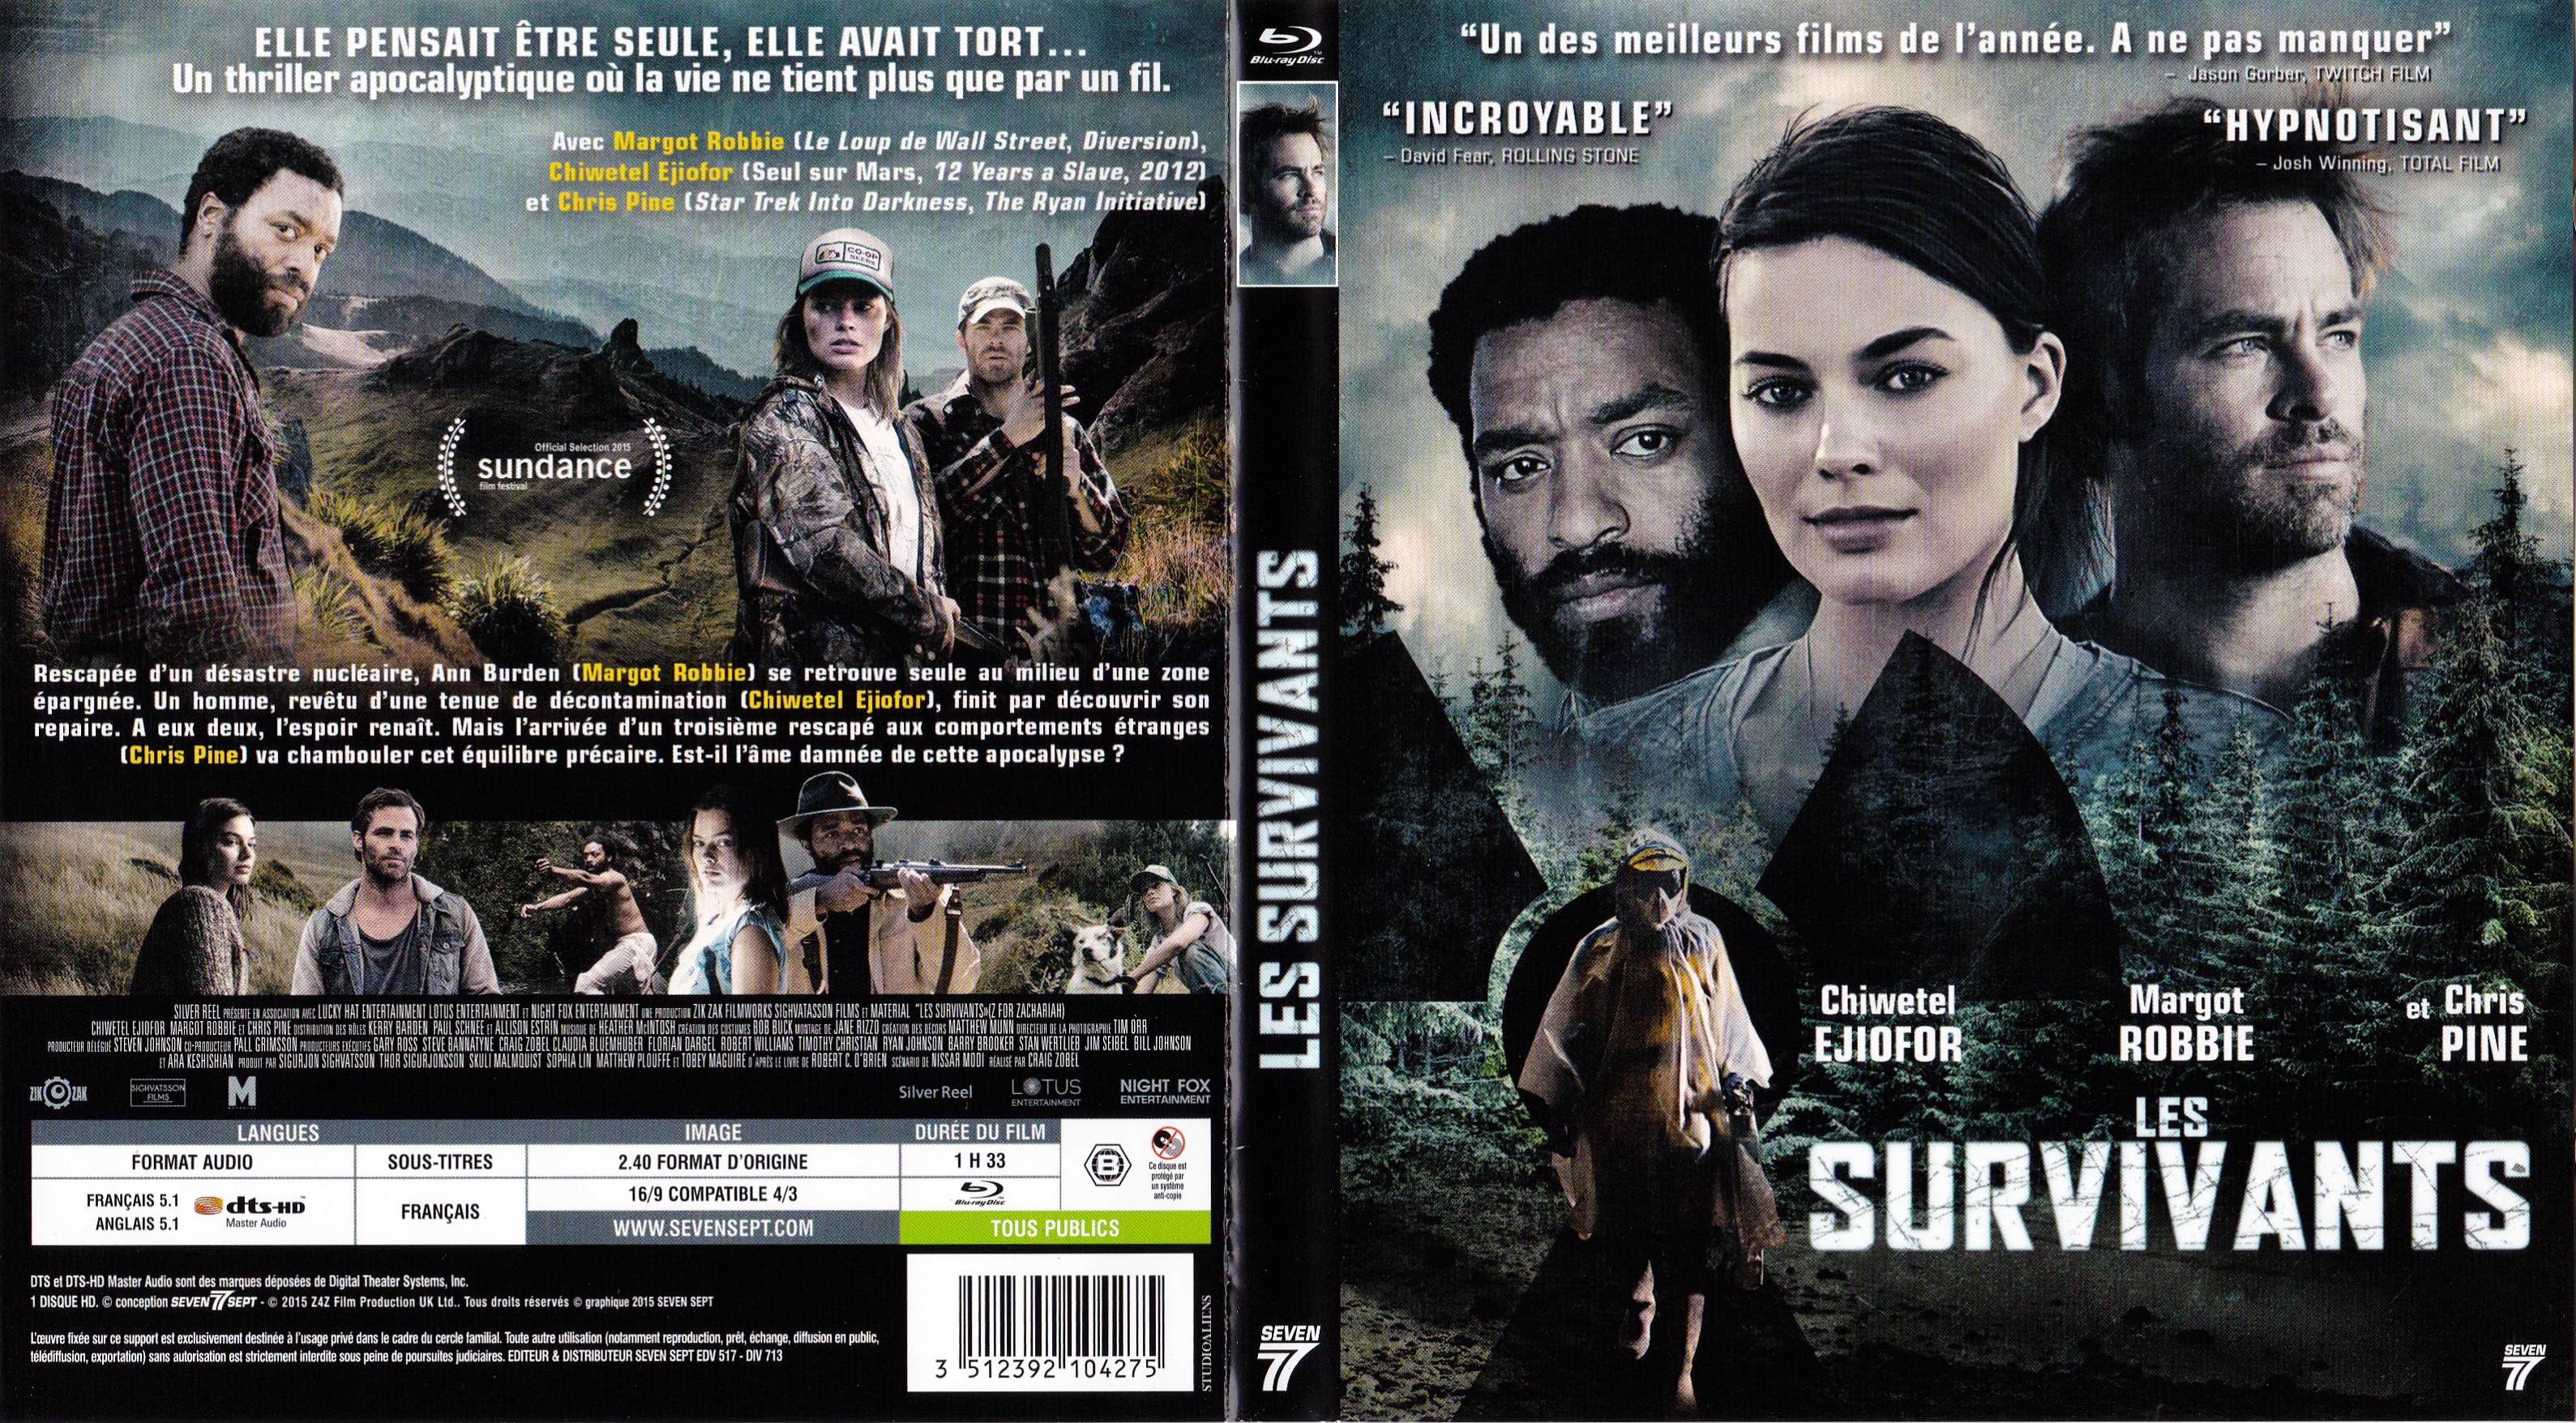 Jaquette DVD Les survivants 2015 (BLU-RAY)